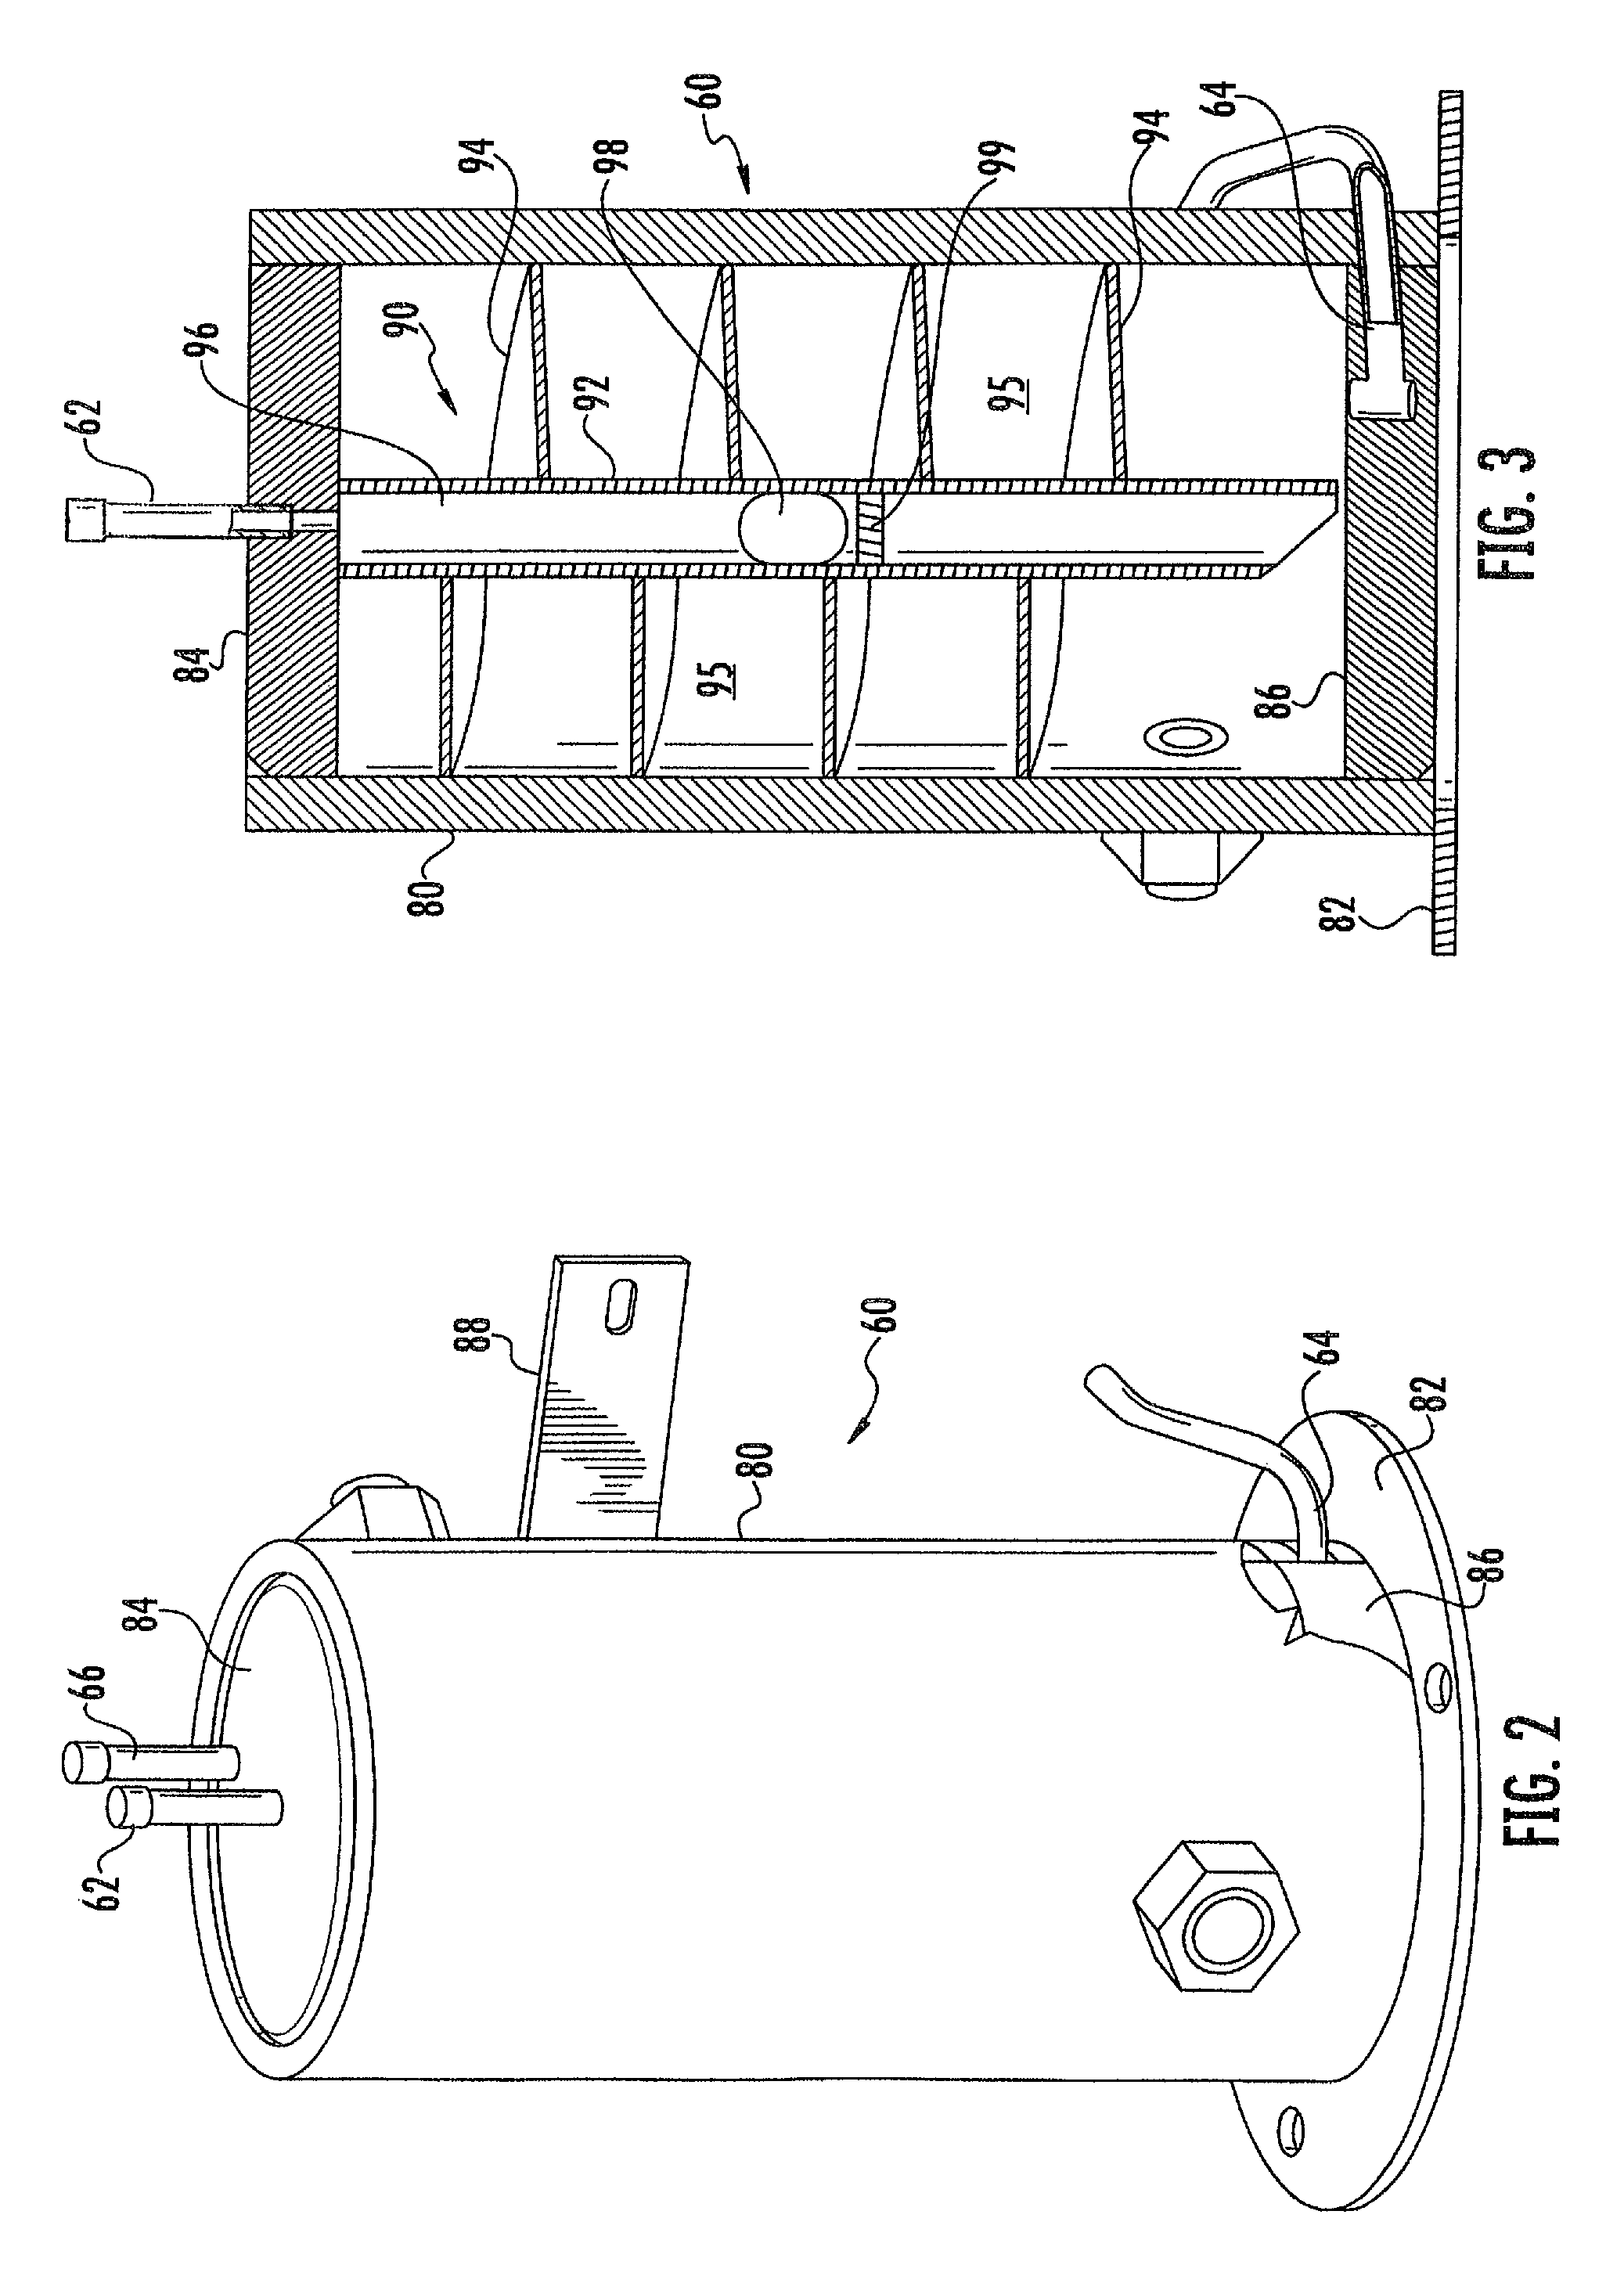 Liquid vapor phase separation apparatus